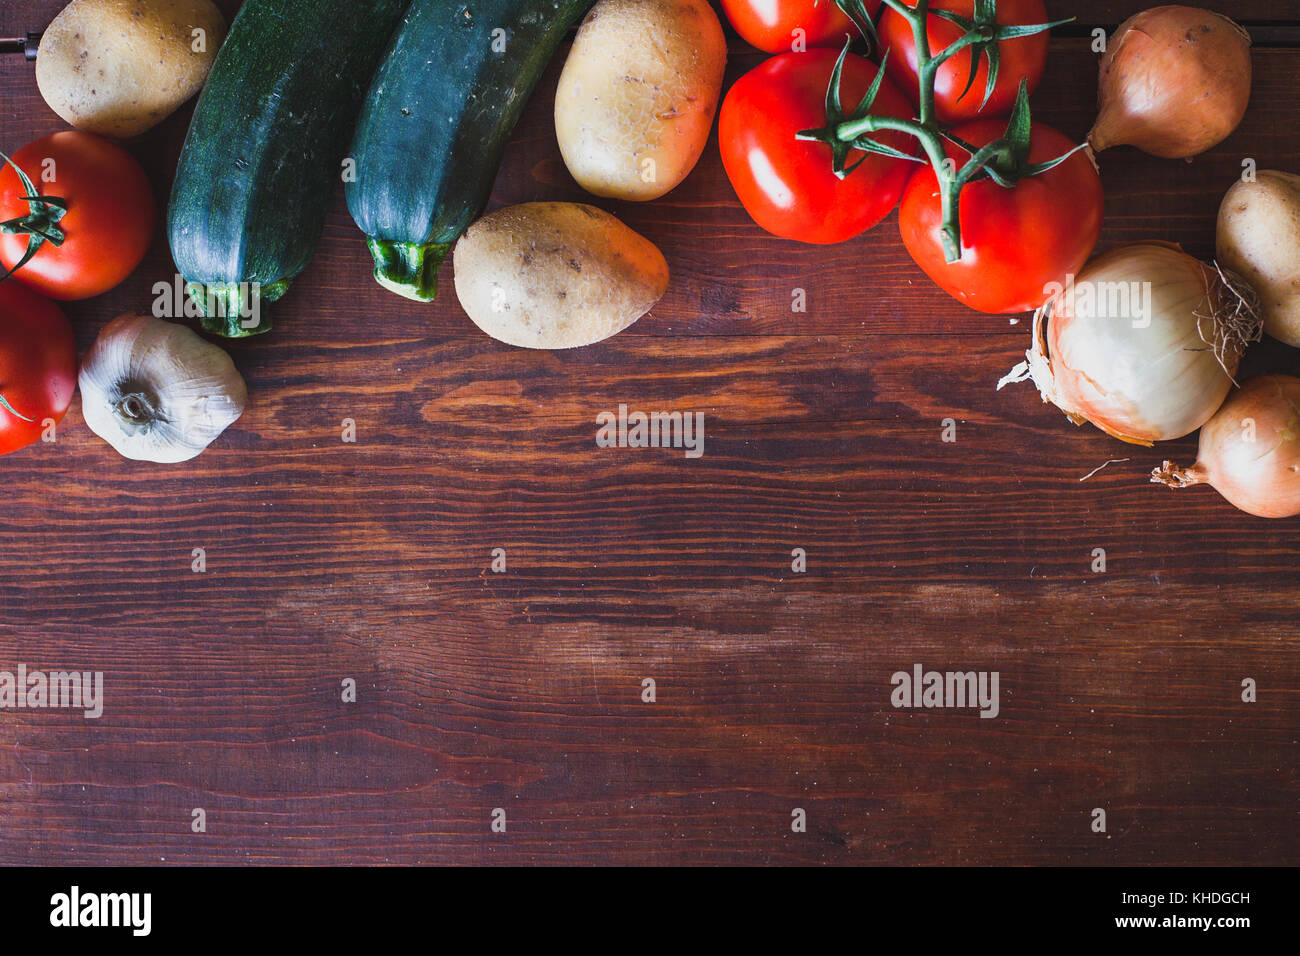 Frisches Gemüse auf hölzernen Hintergrund, Tomaten, Zwiebeln und Kartoffeln Stockfoto